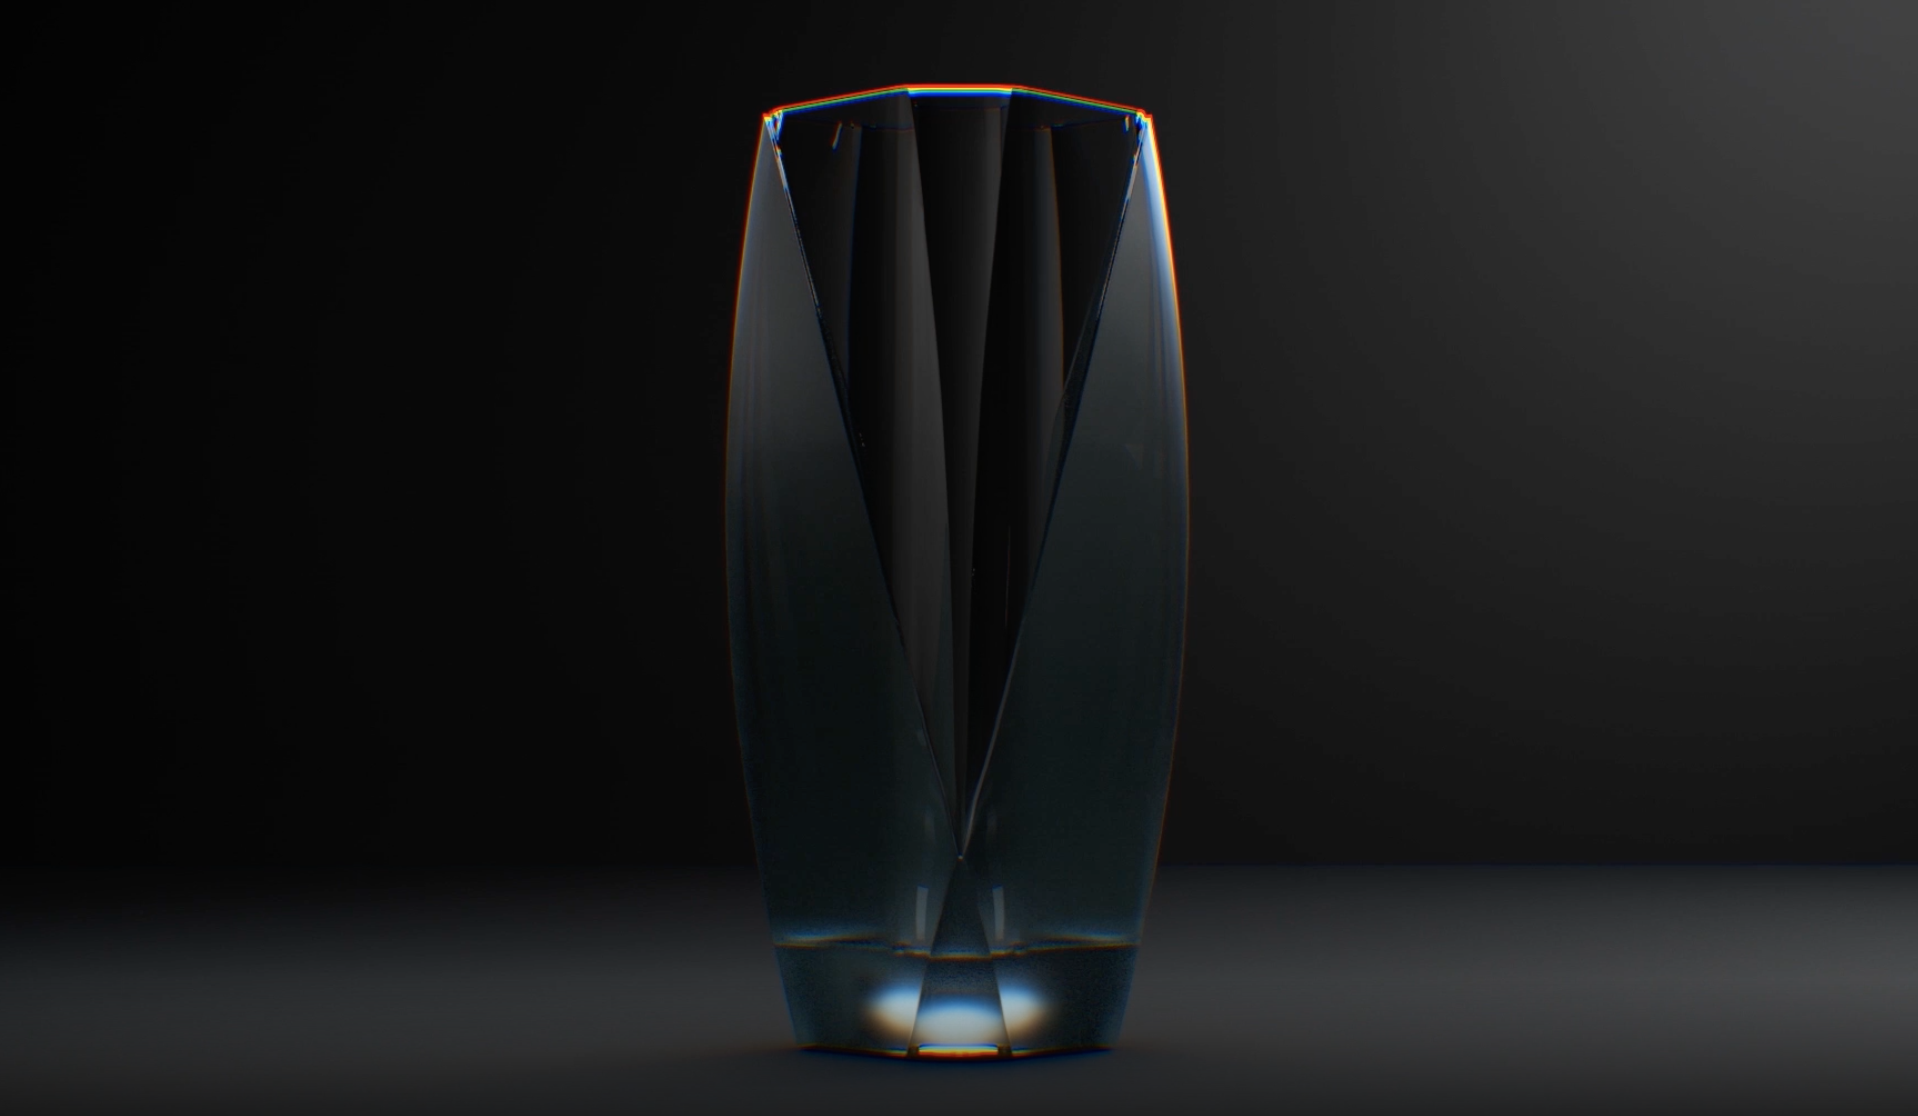 neo-glass-illuminated-glass-landing-page-kickstarter-1